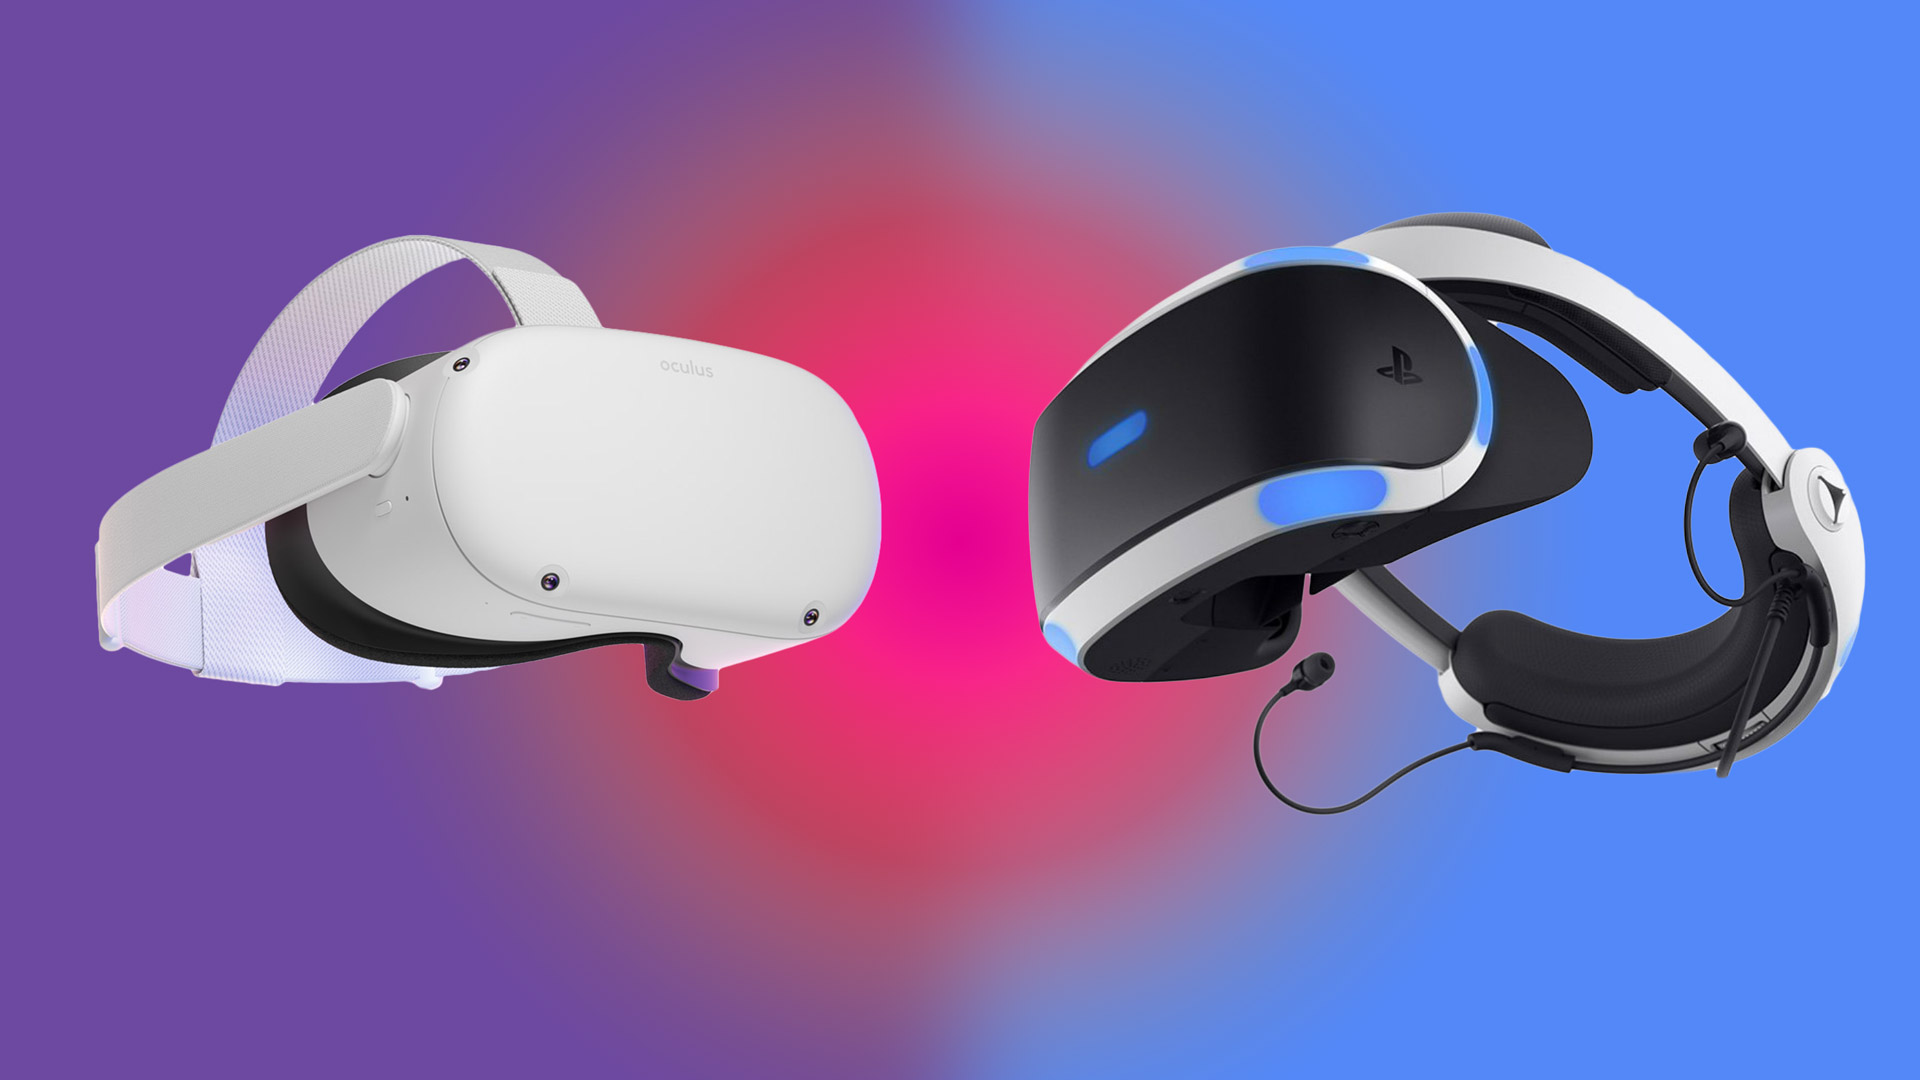 Rapport - Skyhøj interesse for AR- og VR-headsets